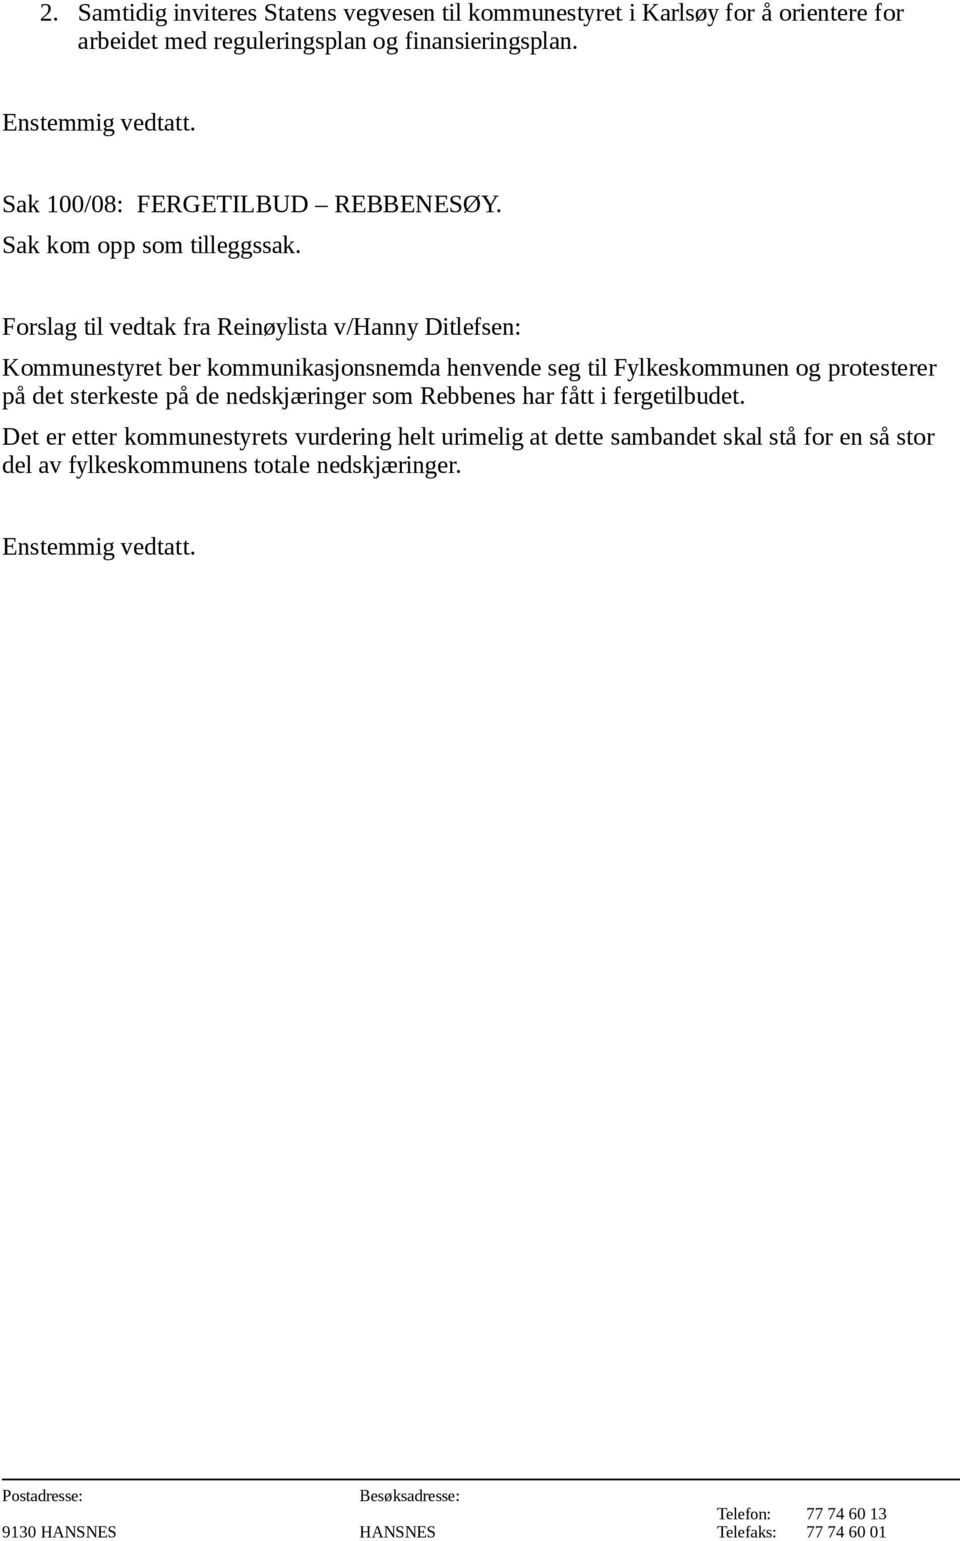 Forslag til vedtak fra Reinøylista v/hanny Ditlefsen: Kommunestyret ber kommunikasjonsnemda henvende seg til Fylkeskommunen og protesterer på det